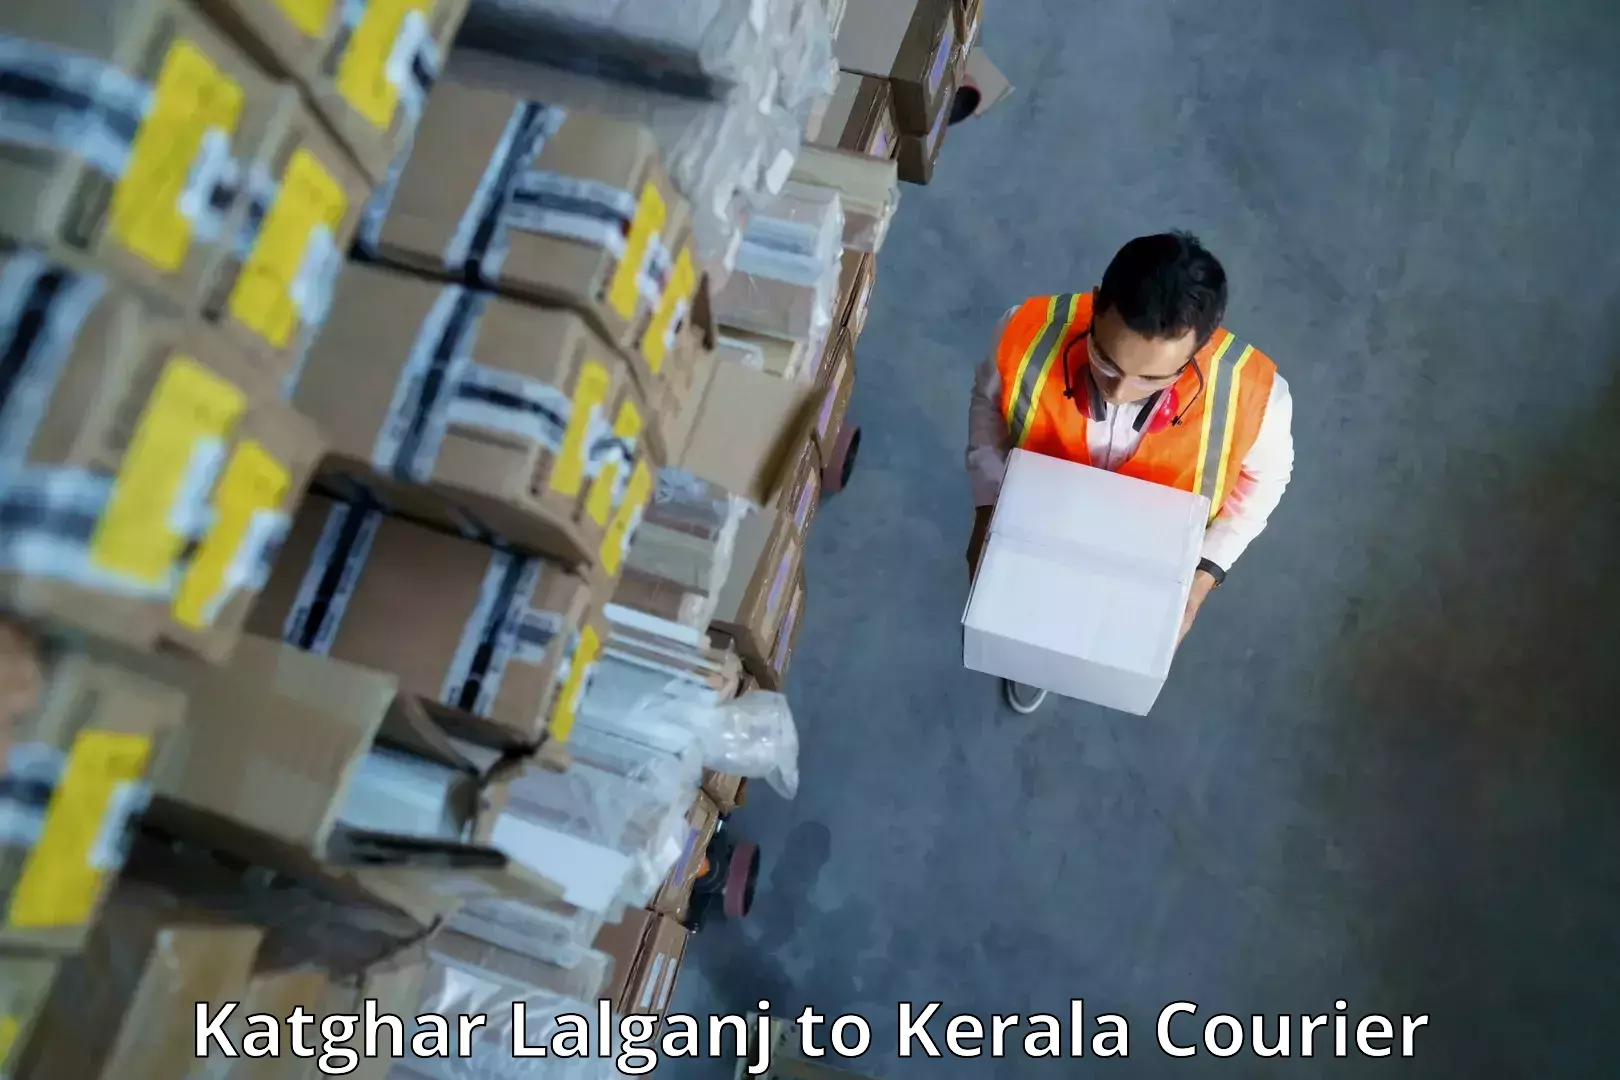 Logistics service provider Katghar Lalganj to Kerala